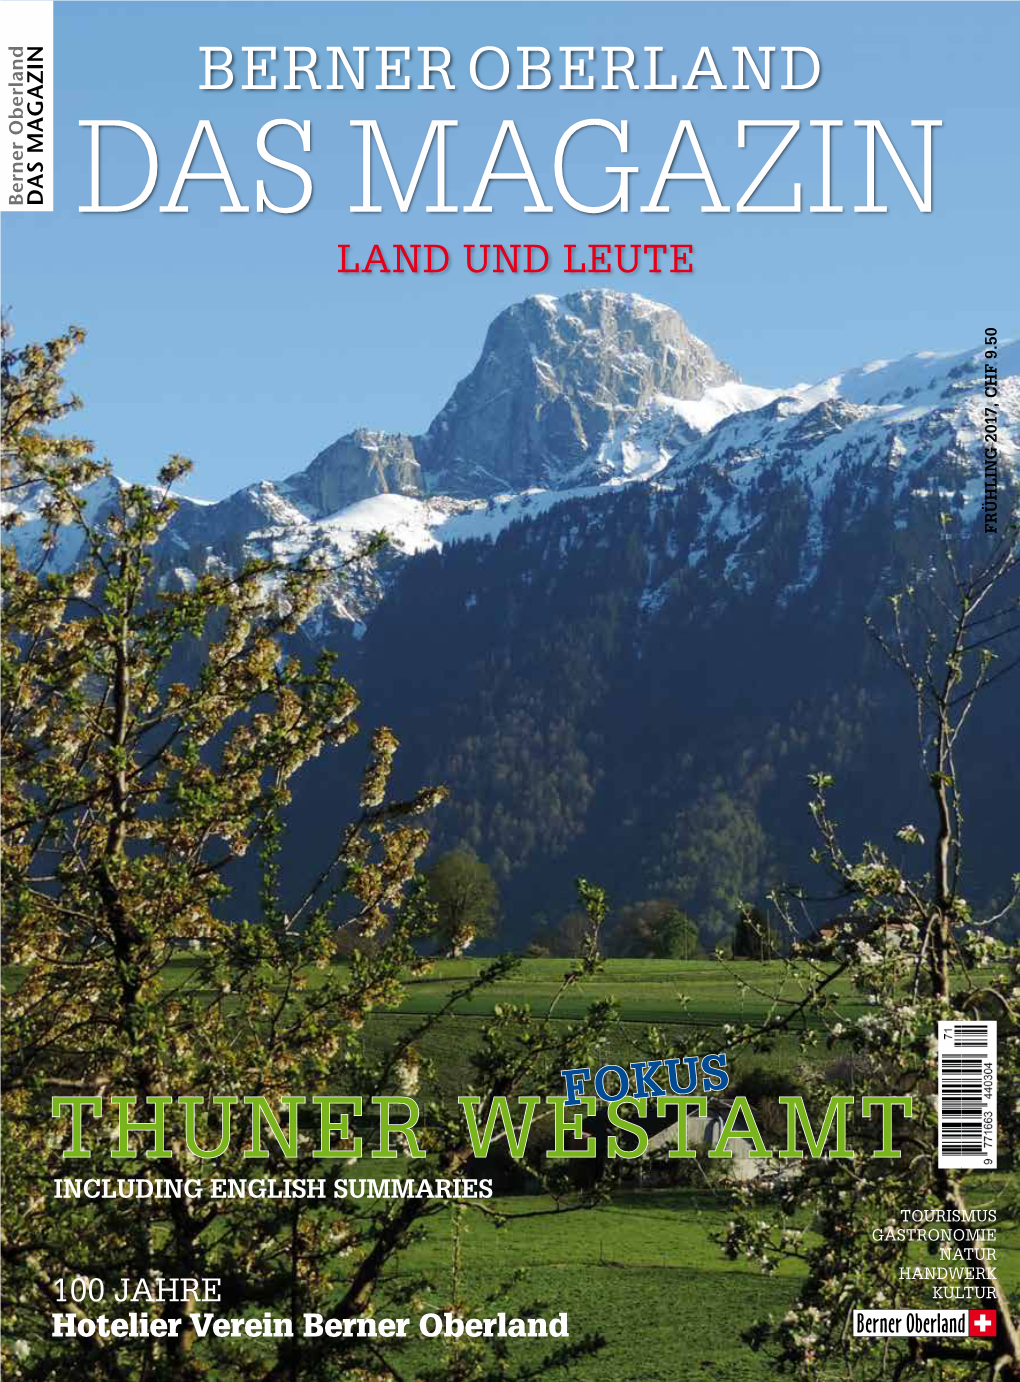 THUNER WESTAMT Hotelier Verein Berner Oberland 100 JAHRE INCLUDING ENGLISH SUMMARIES DAS MAGAZIN BERNER OBERLAND